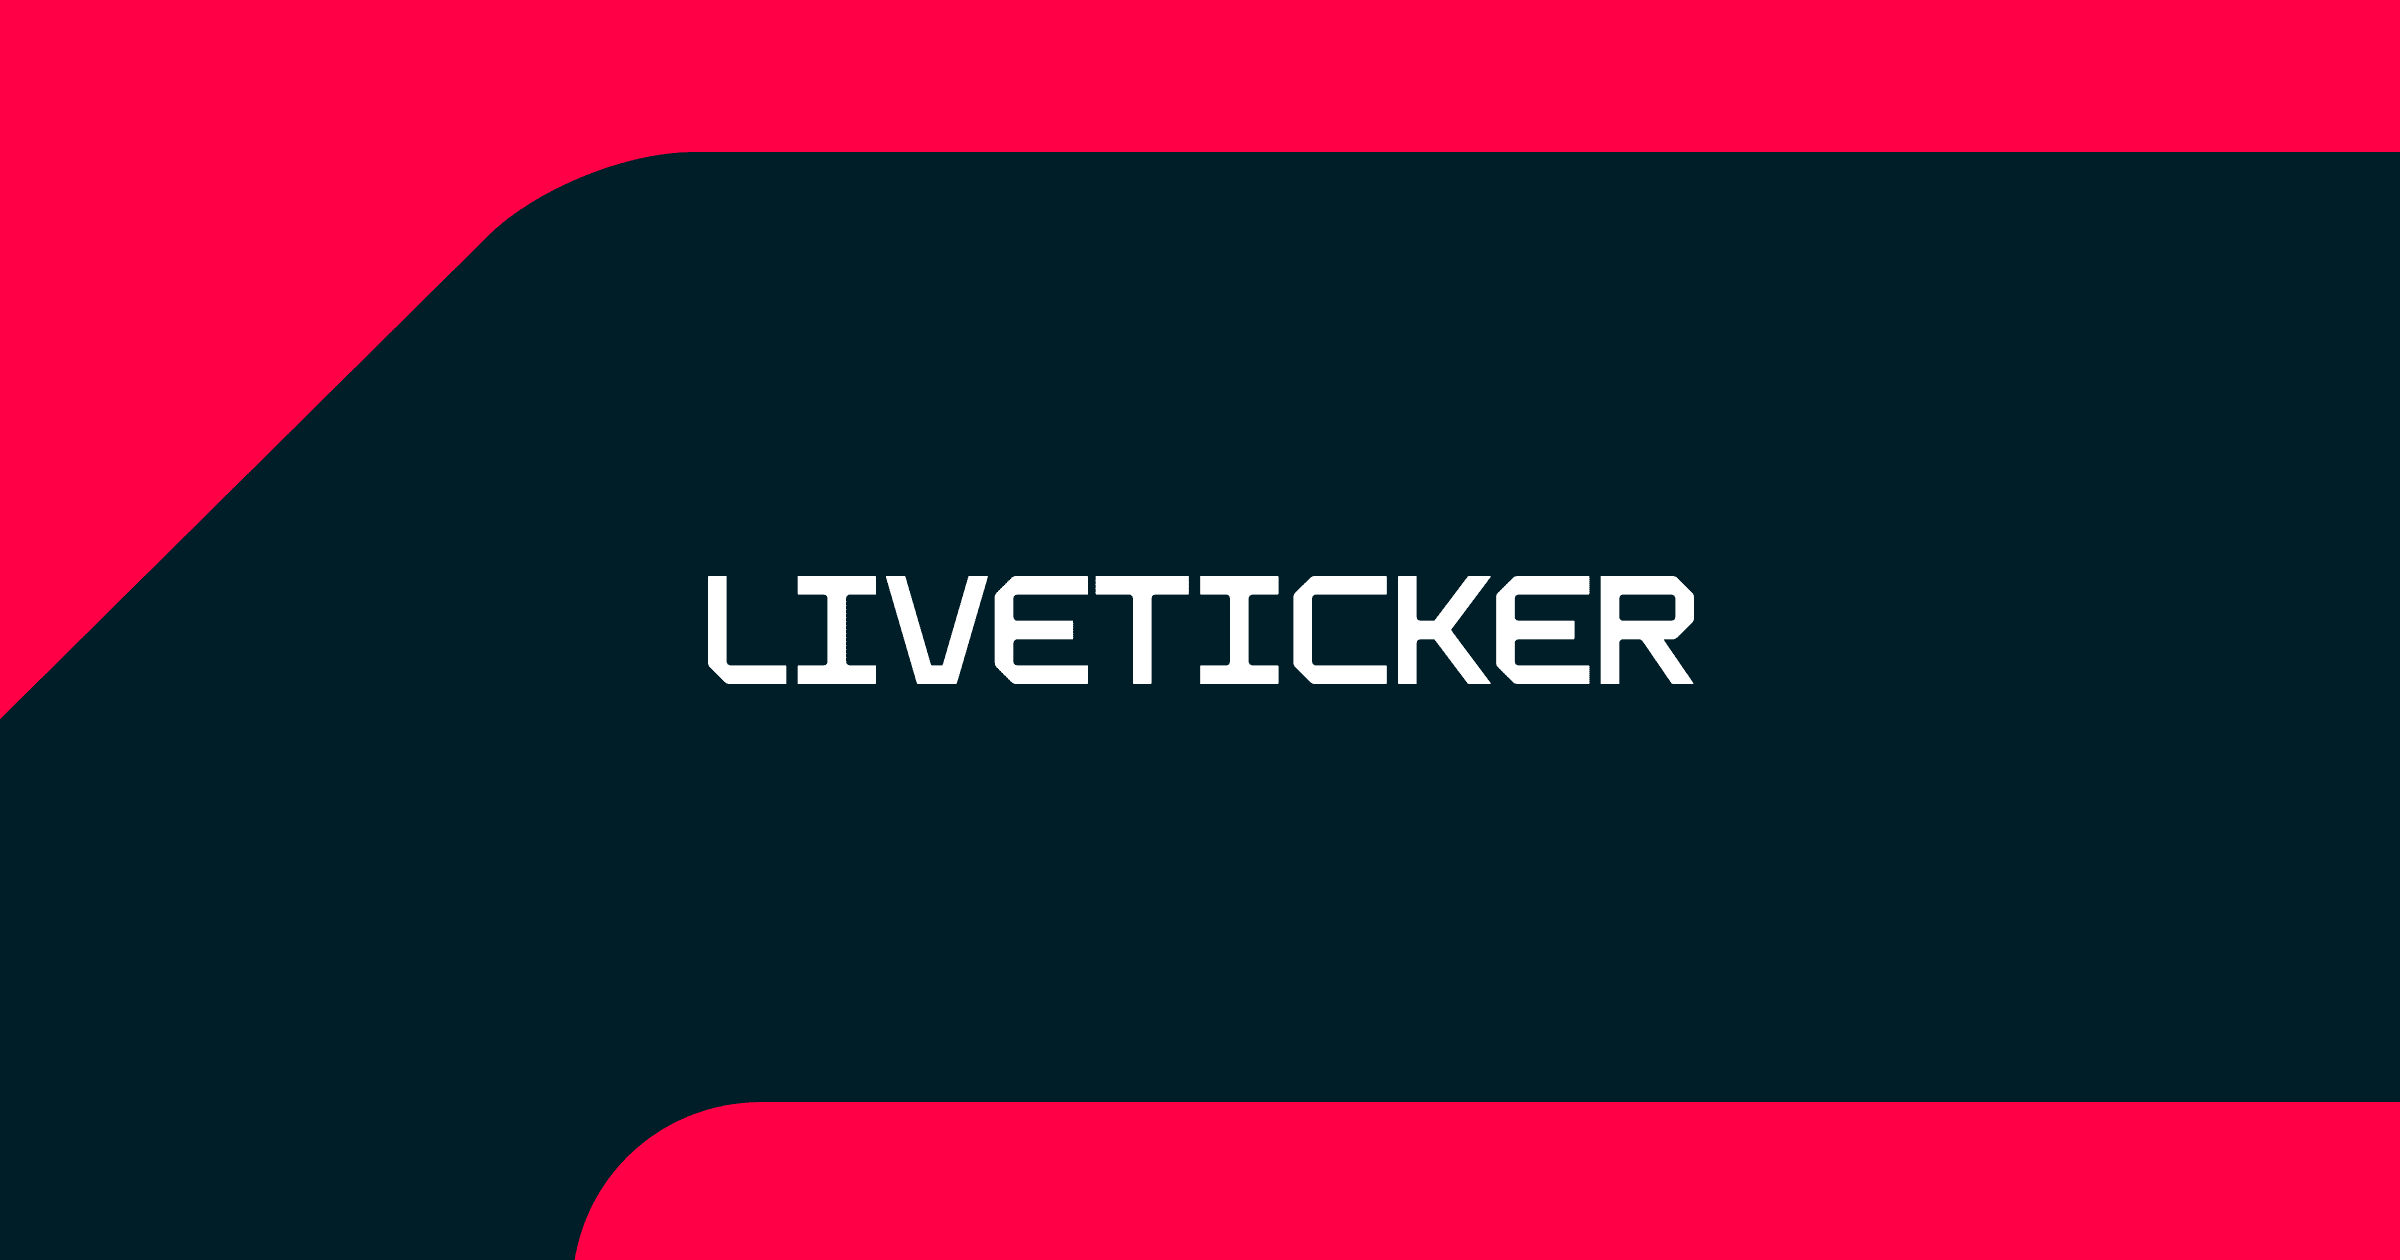 www.liveticker.com